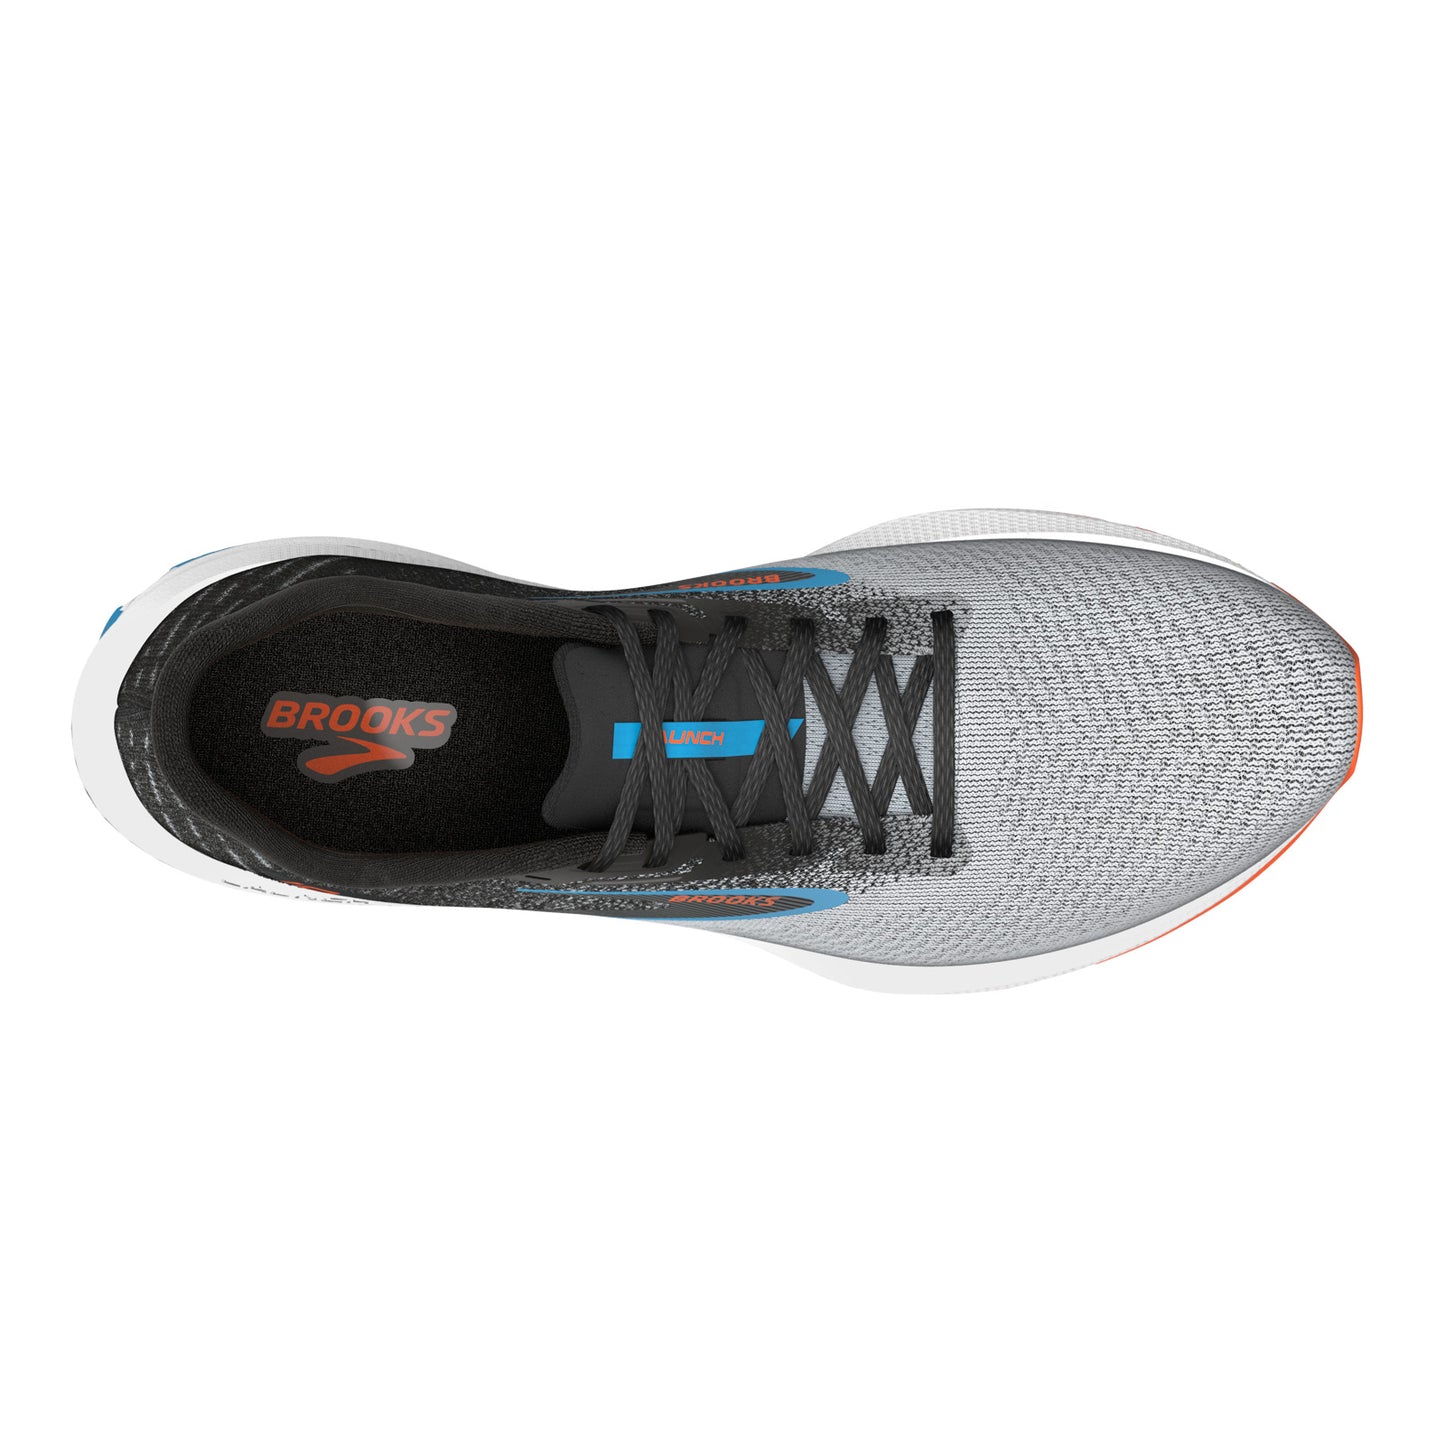 Peltz Shoes  Men's Brooks Launch 10 Running Shoe Black/Grey/Orange 110409 1D 019